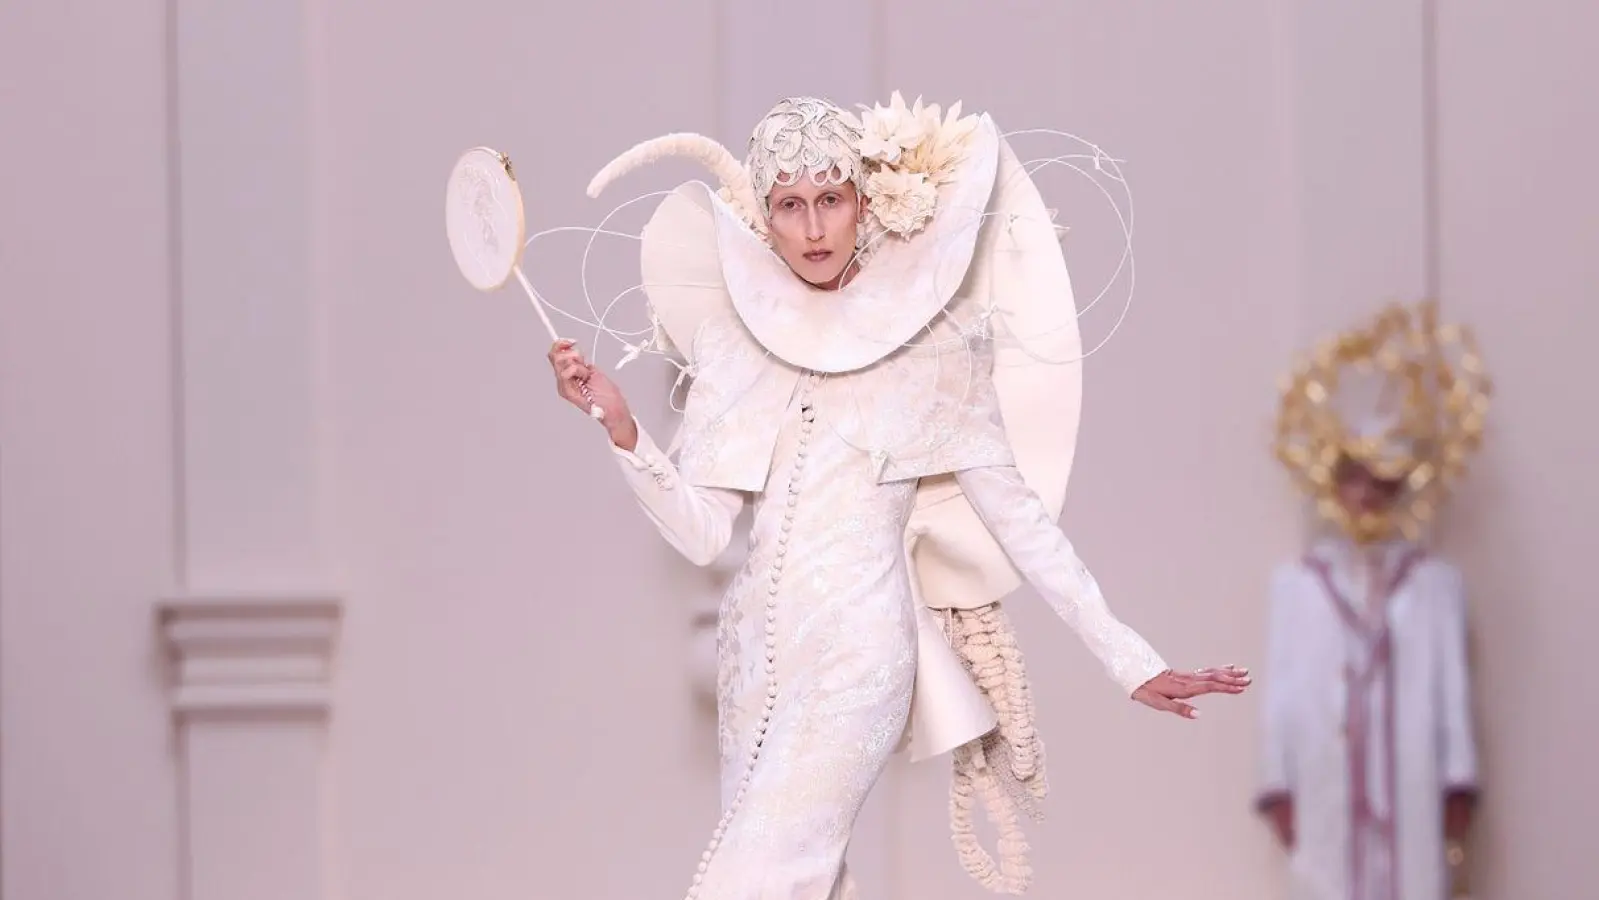 Während der alljährlichen Pariser Fashion Week stellen Designer aus aller Welt ihre neuen Kreationen vor. Hier präsentiert Anna Cleveland einen Look für eine neue Thom Browne Haute Couture Kollektion. (Foto: Vianney Le Caer/Invision/AP/dpa)